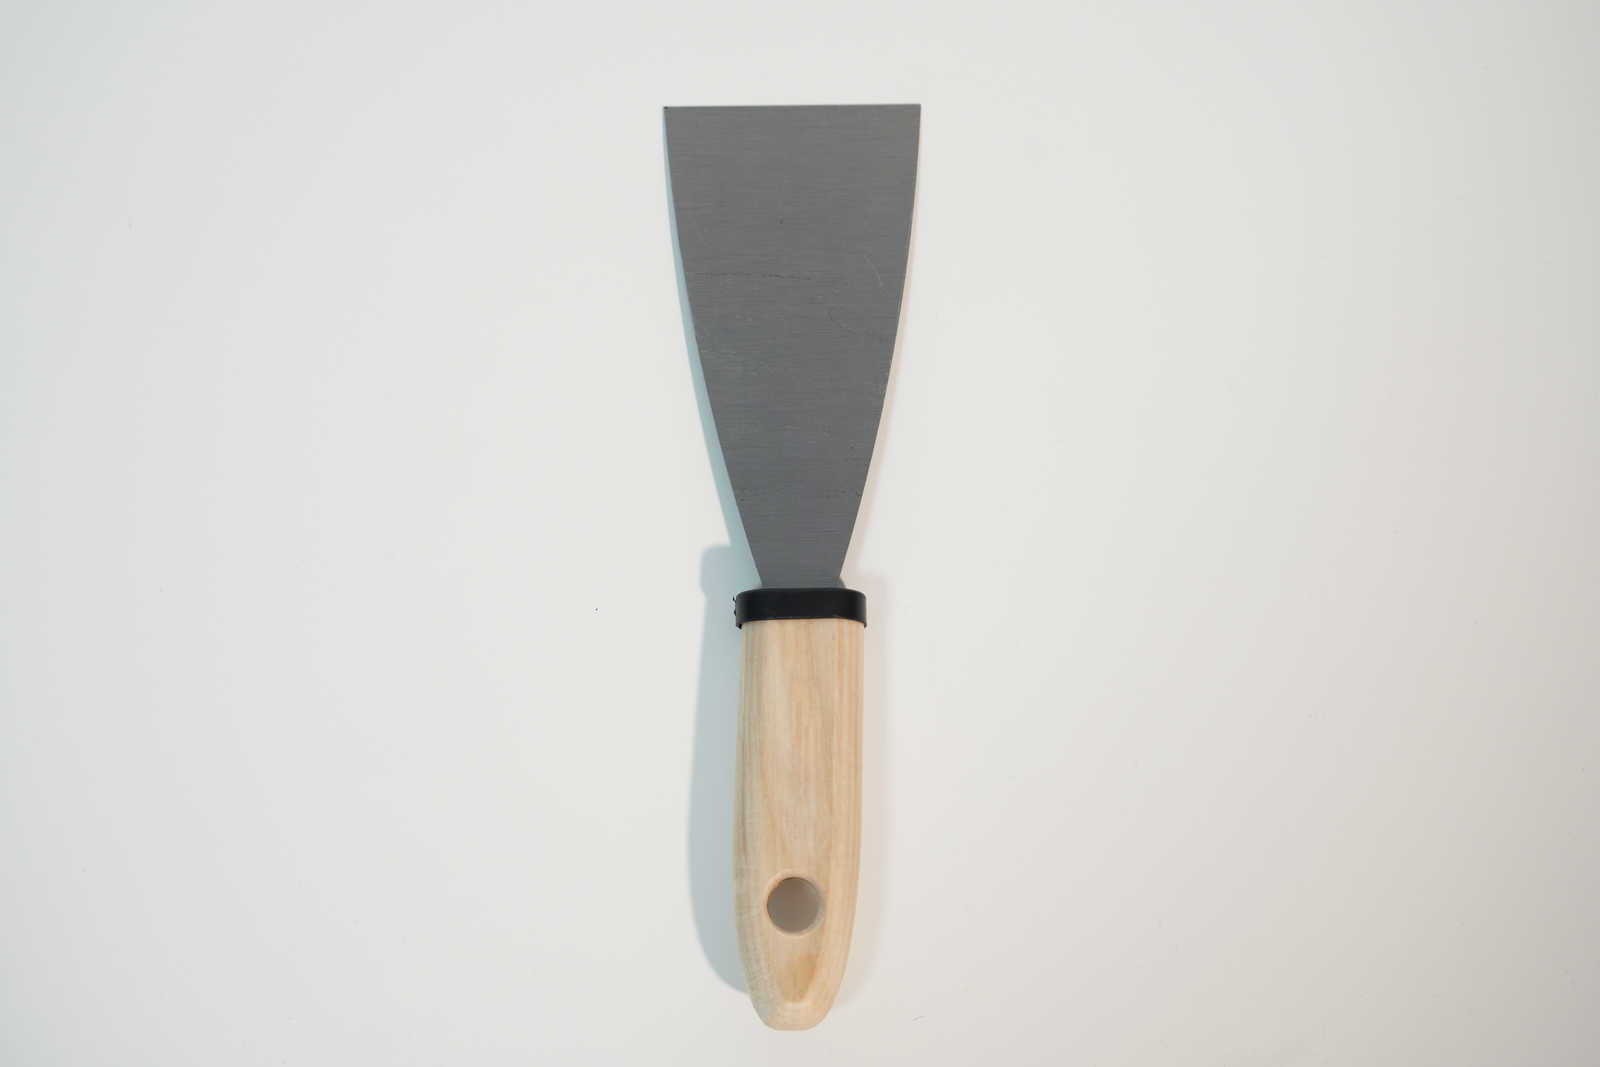             Spatola da pittore 60 mm con lama flessibile in acciaio e manico in legno
        